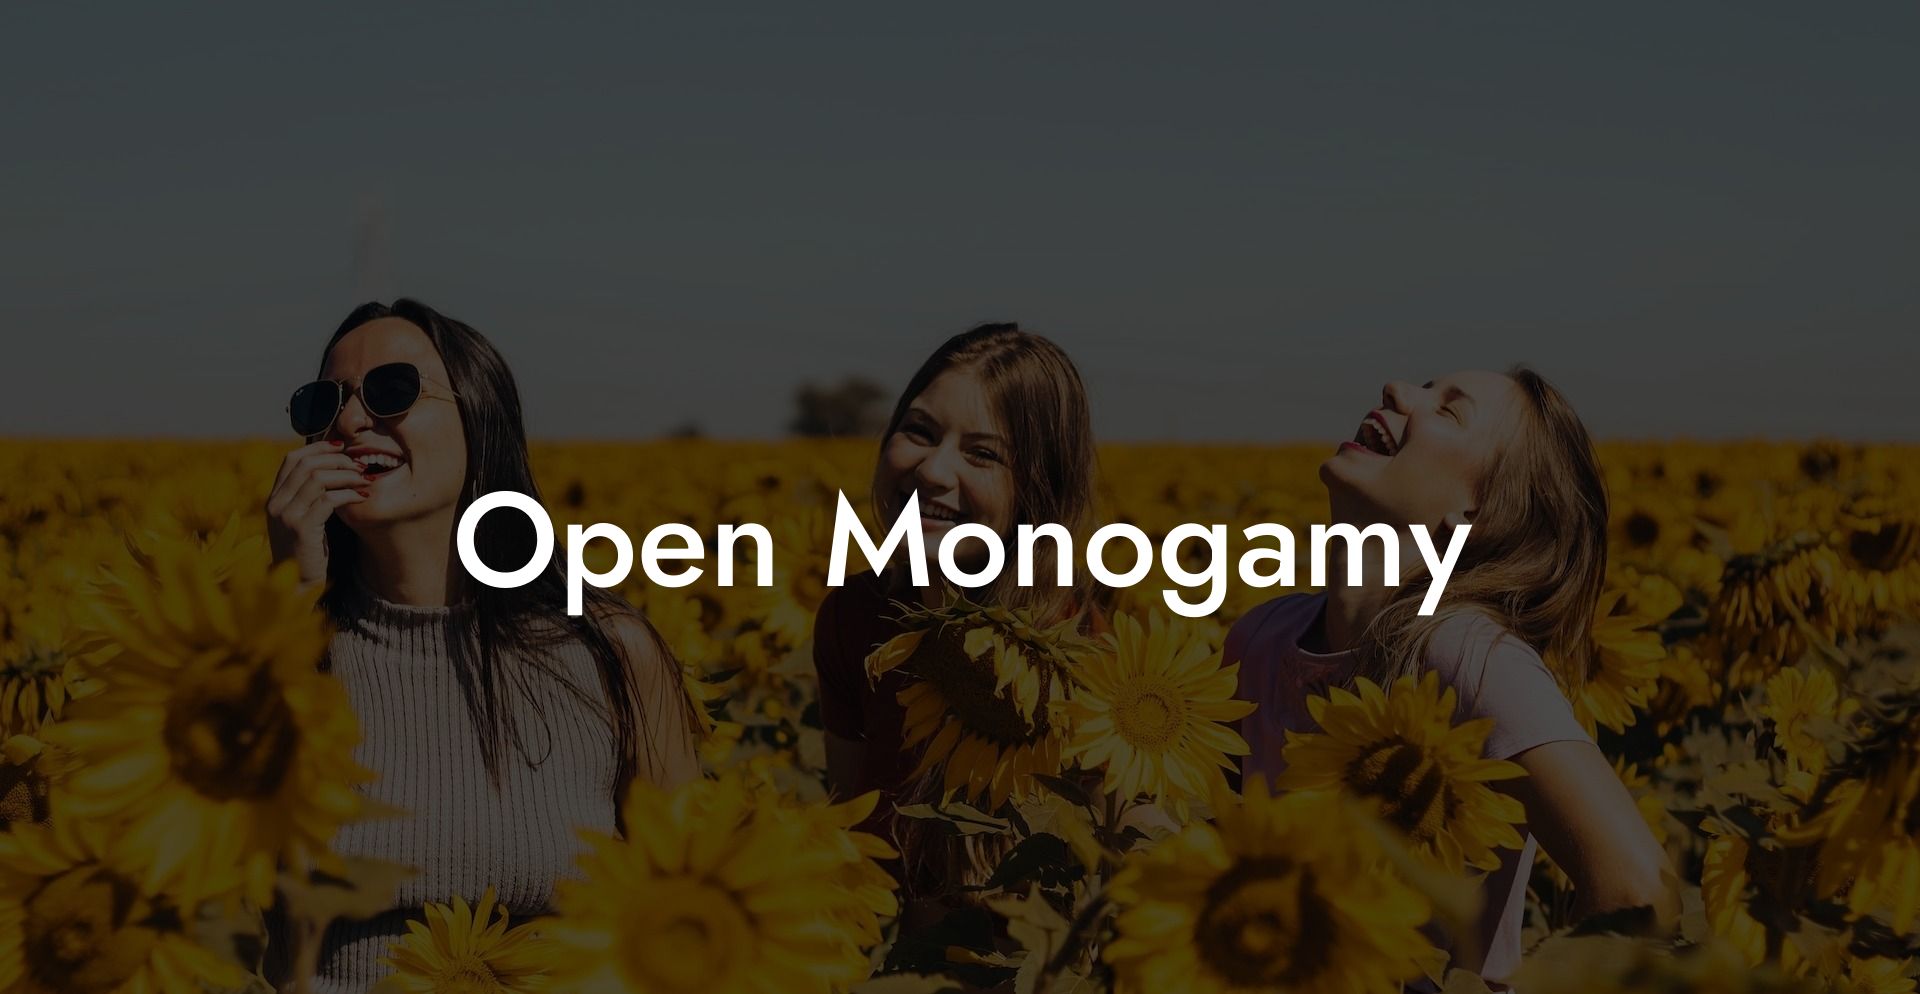 Open Monogamy